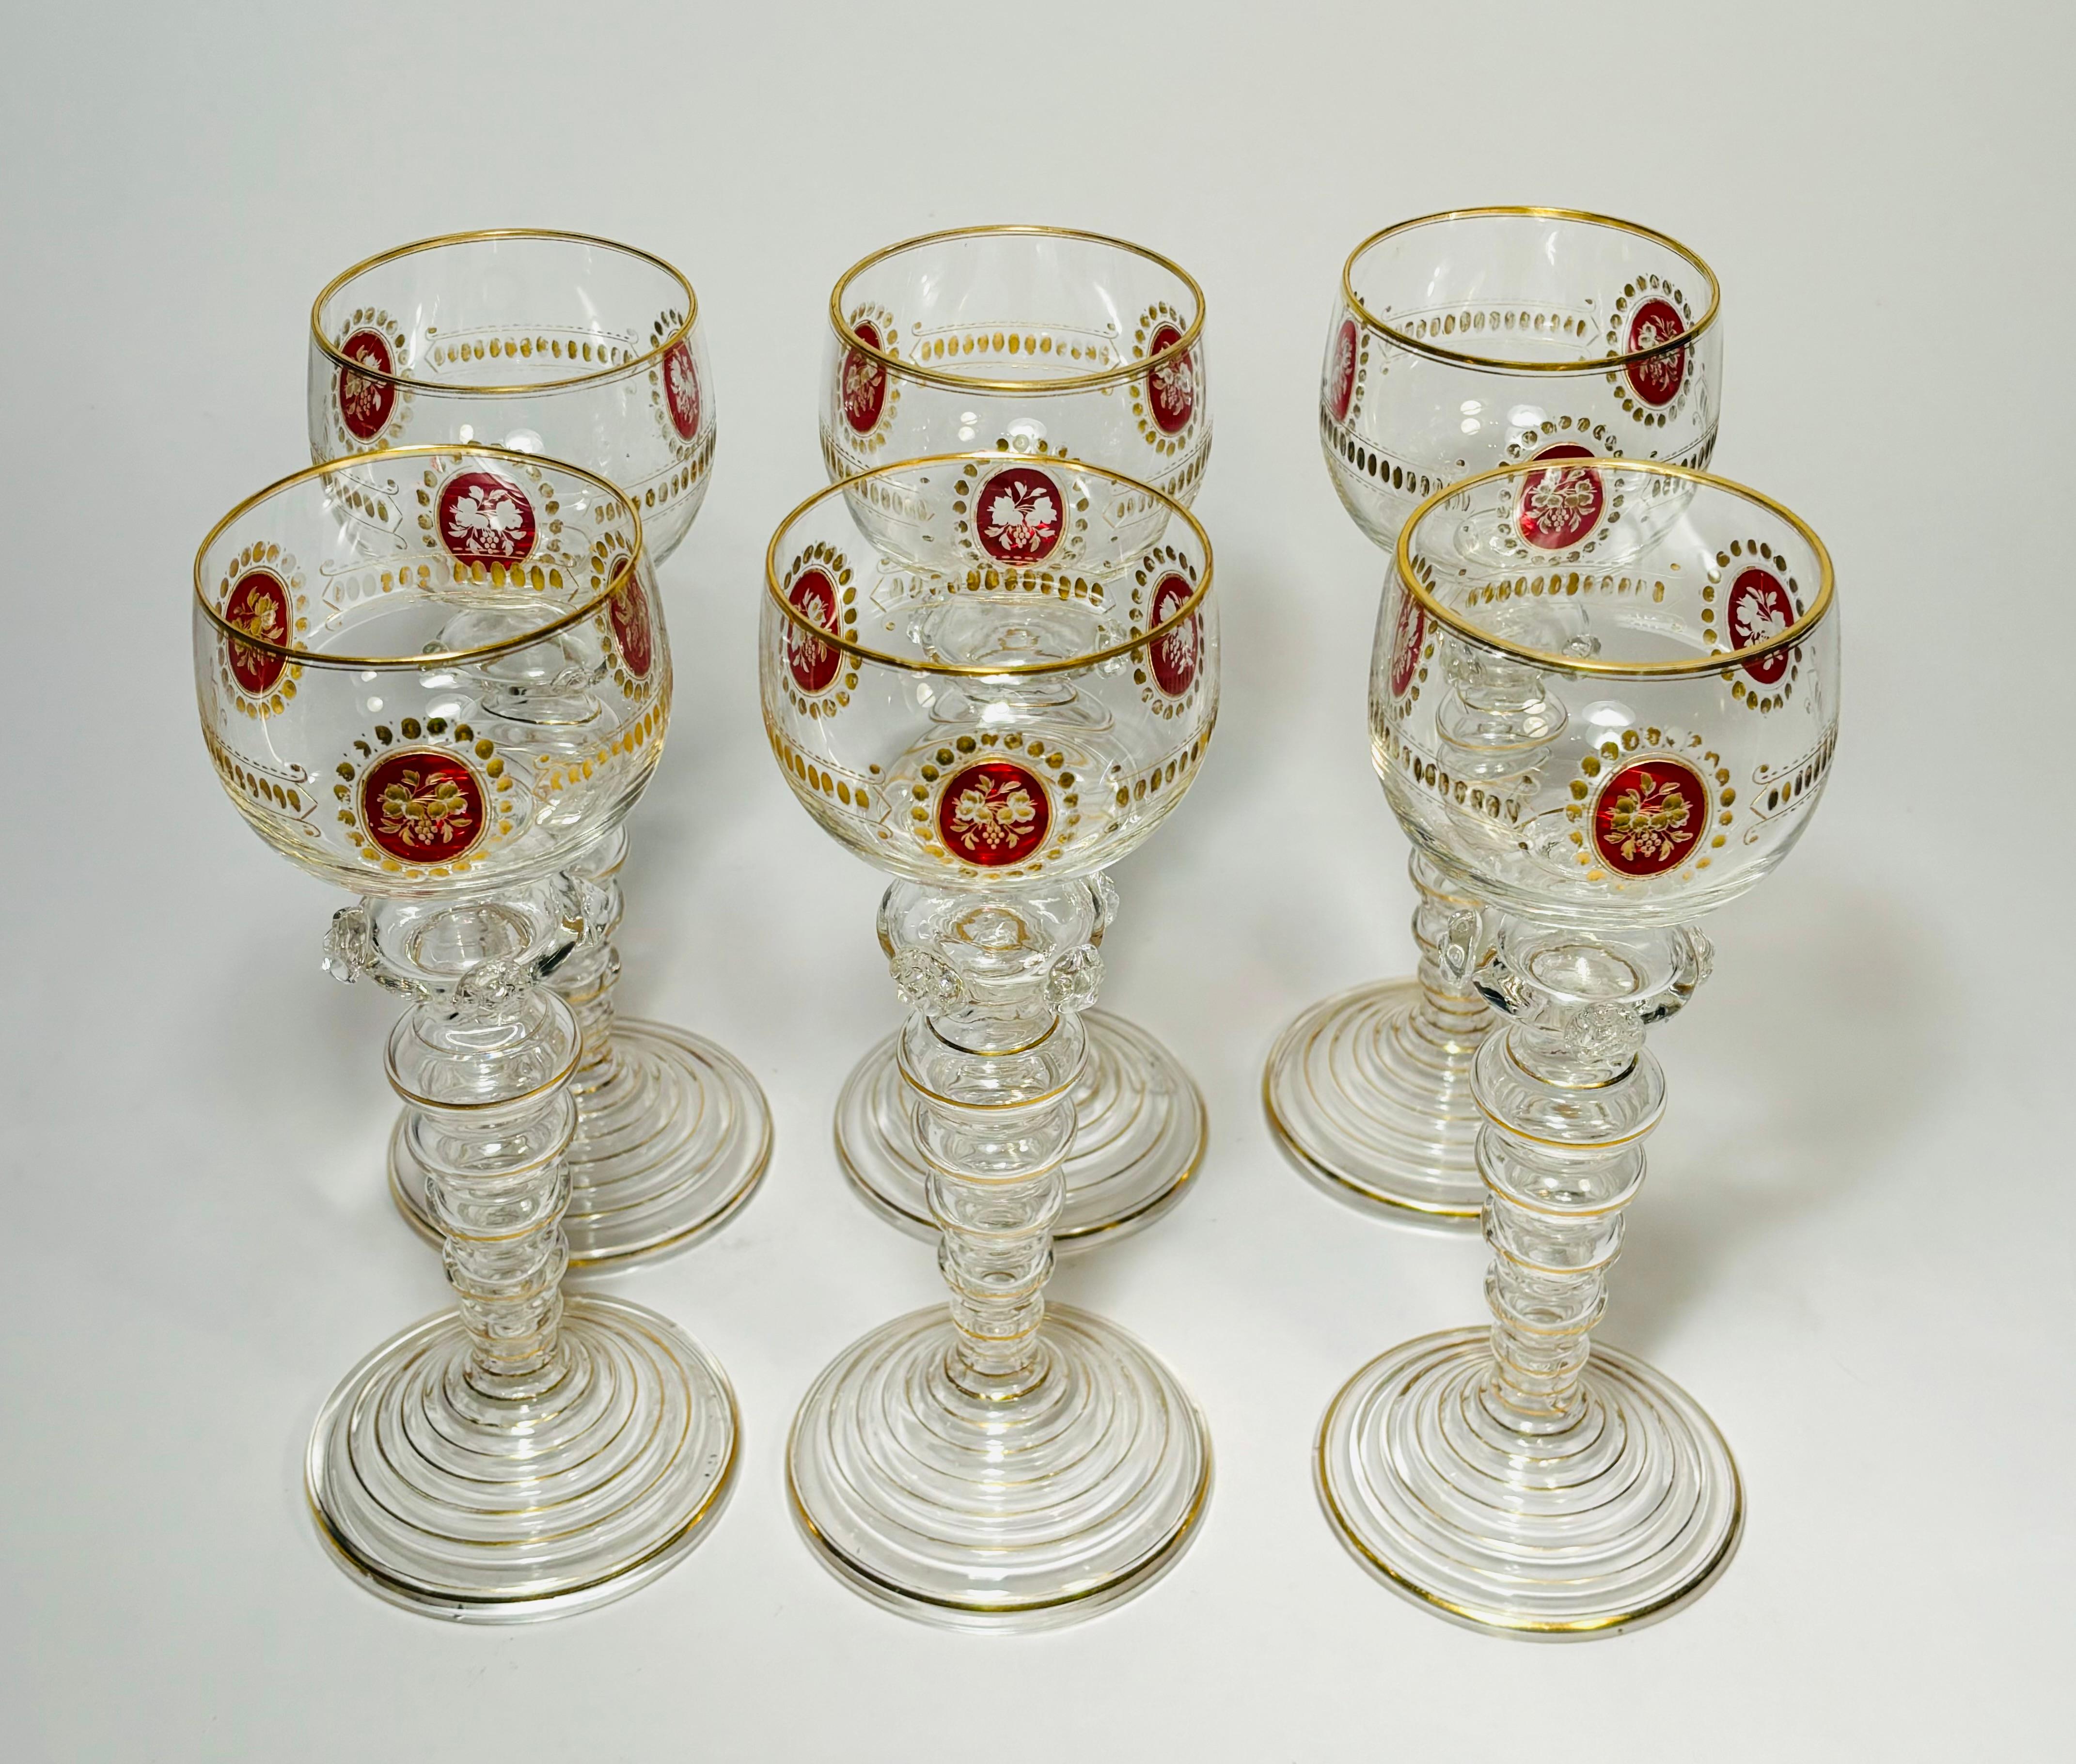 Ein elegantes Set von Weißweingläsern von Moser, einem unserer beliebtesten Kristallhersteller des Goldenen Zeitalters. Diese zeichnen sich durch einen einzigartig geblasenen Stiel mit zusätzlichen Verzierungen aus. Die Schalen haben eine